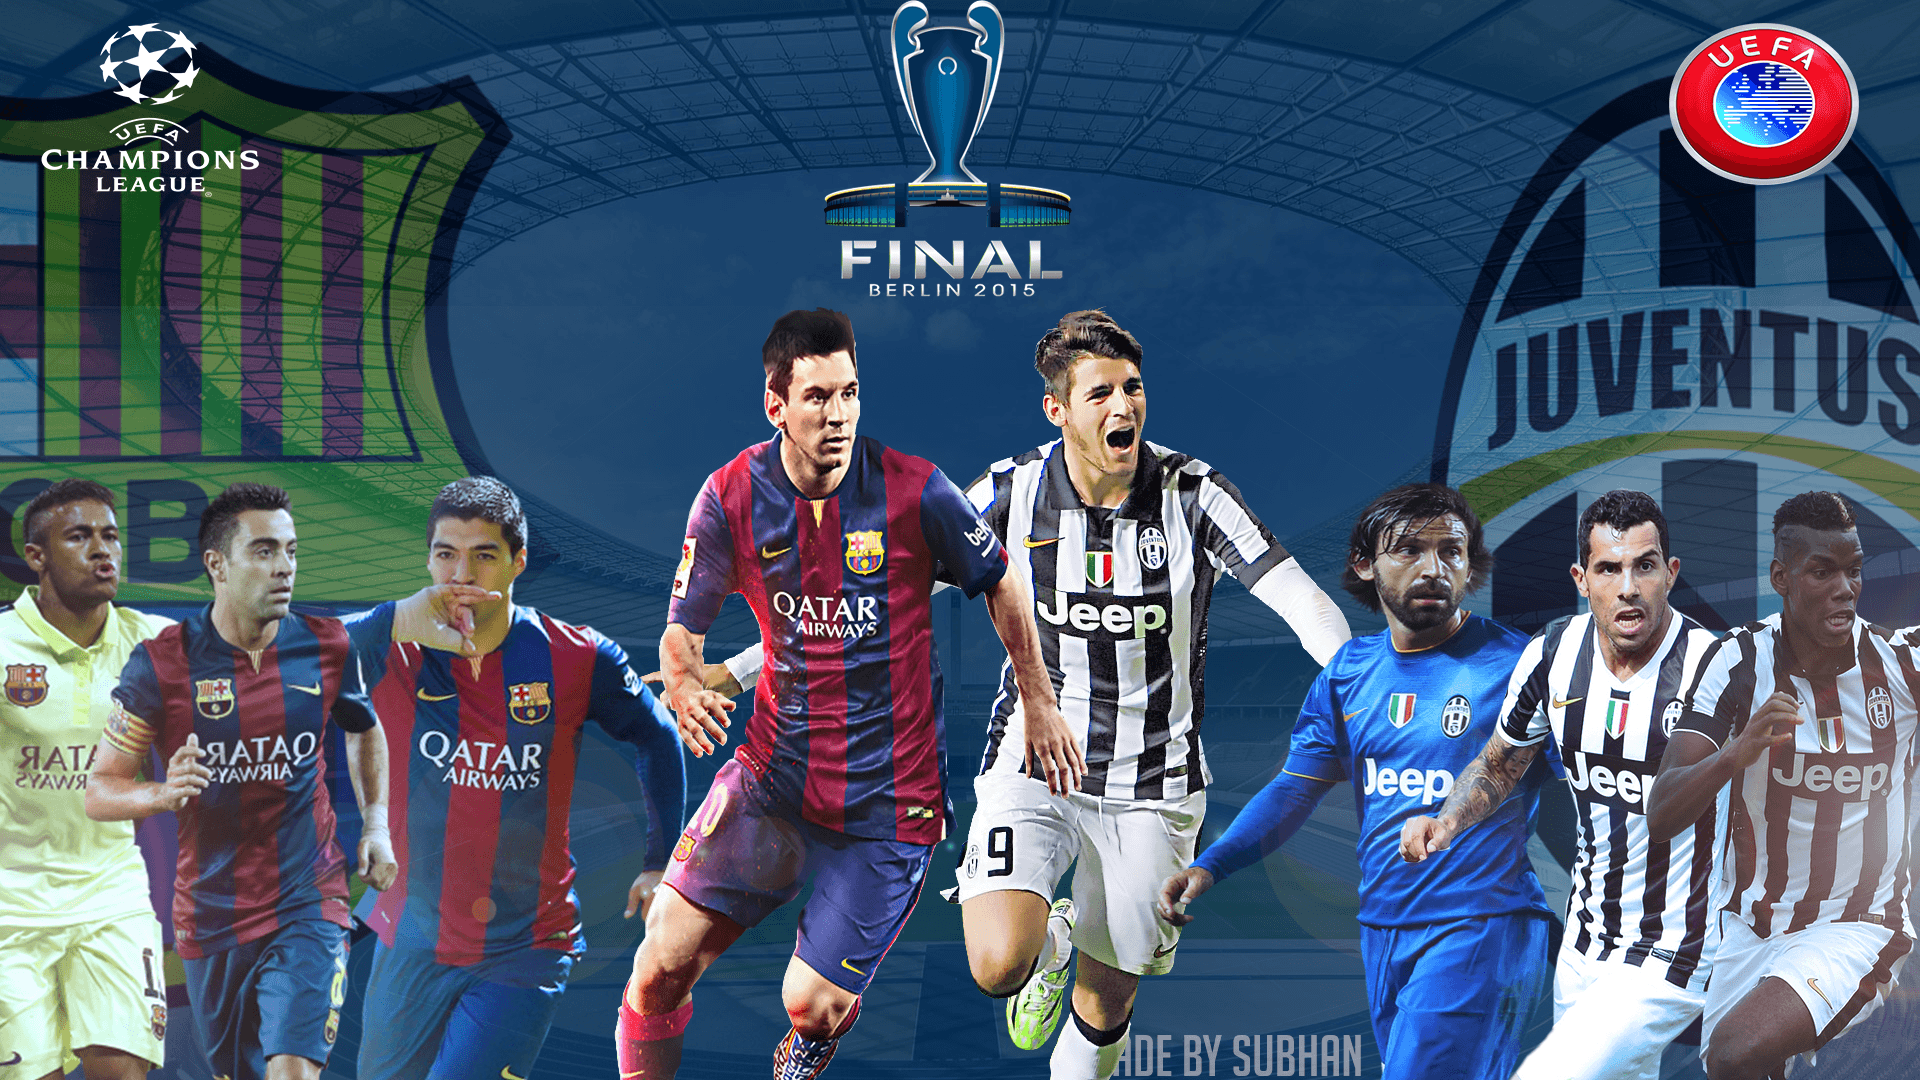 Champions league final 2015 berlin 1080p Wallpaper